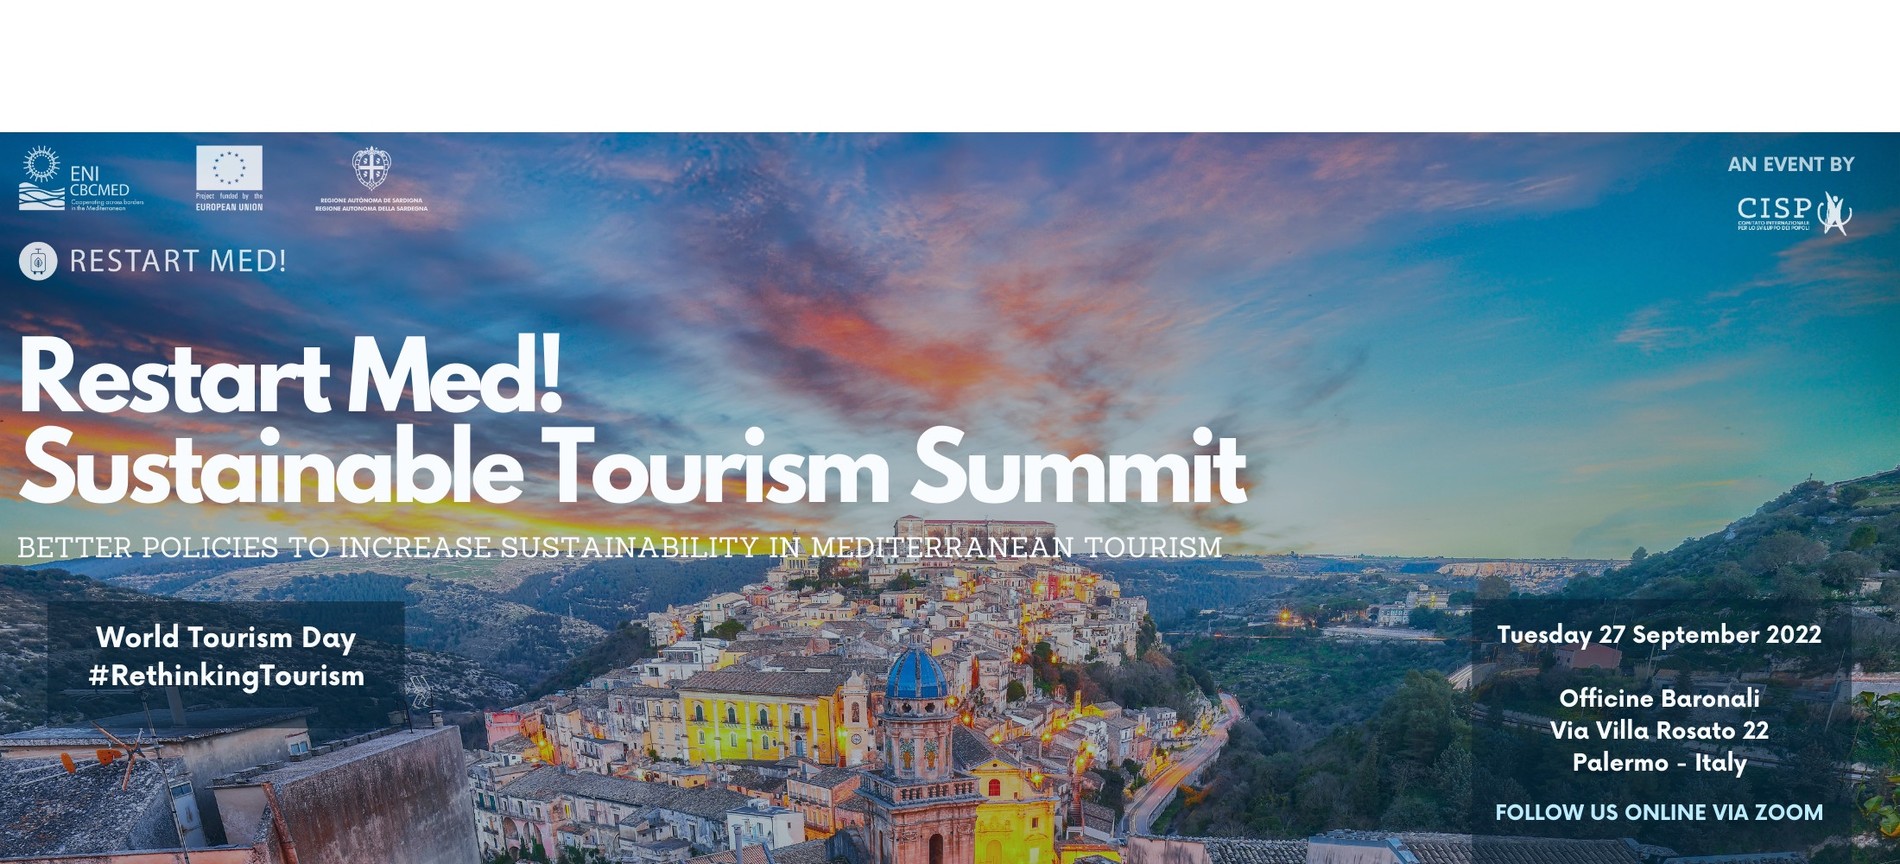 RESTART MED! organizza in Sicilia un summit per il World Tourism Day